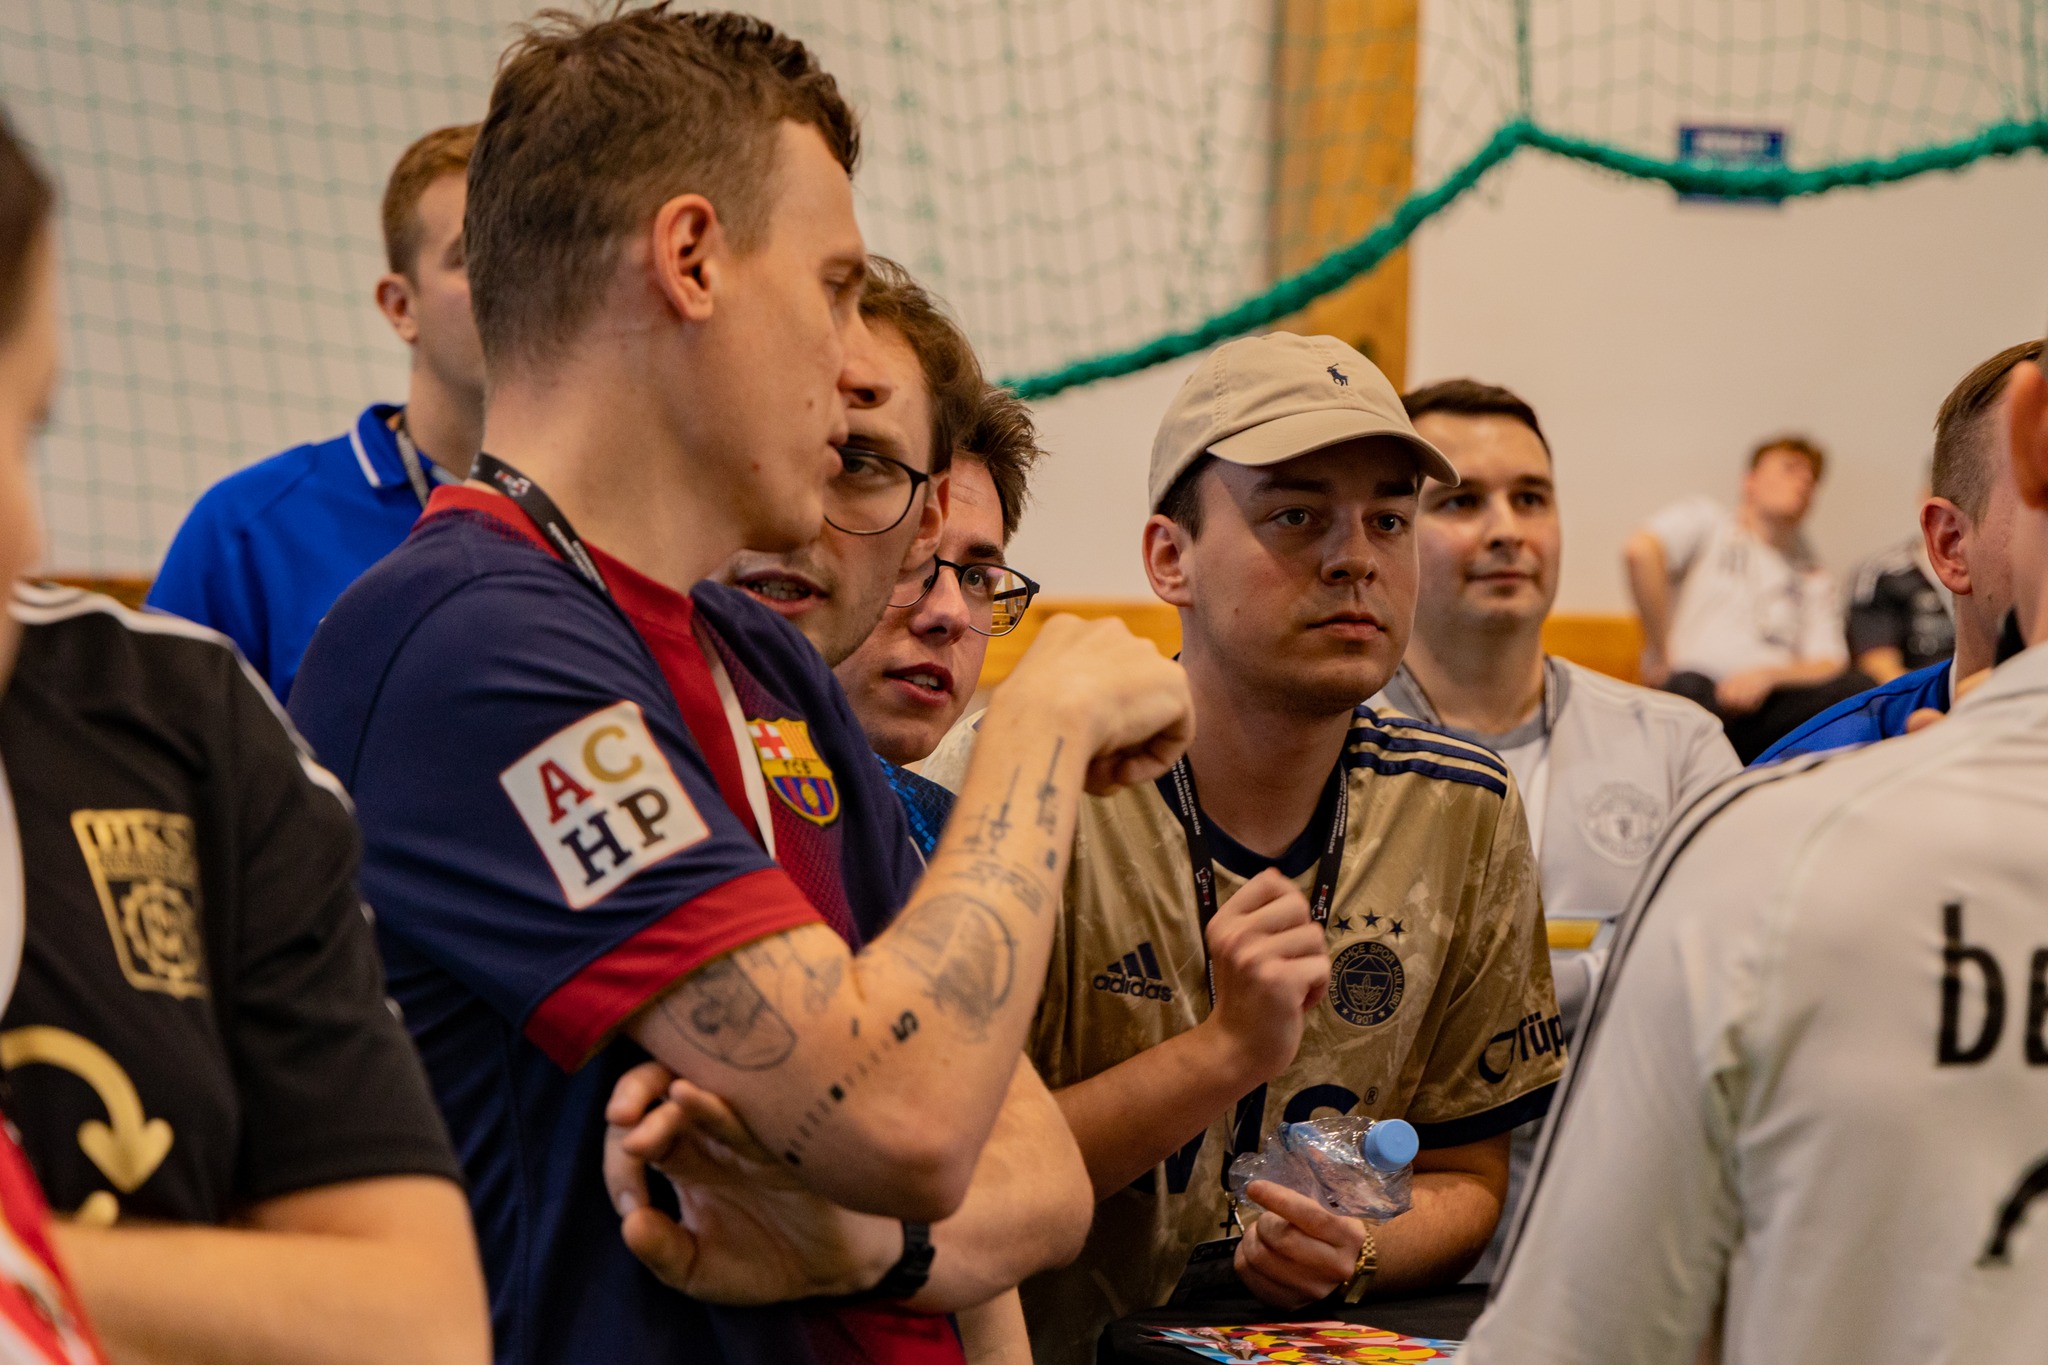 Zlot fanów piłkarskich koszulek – KitsUp (fot. Radosław Chachowski / KitsUp)